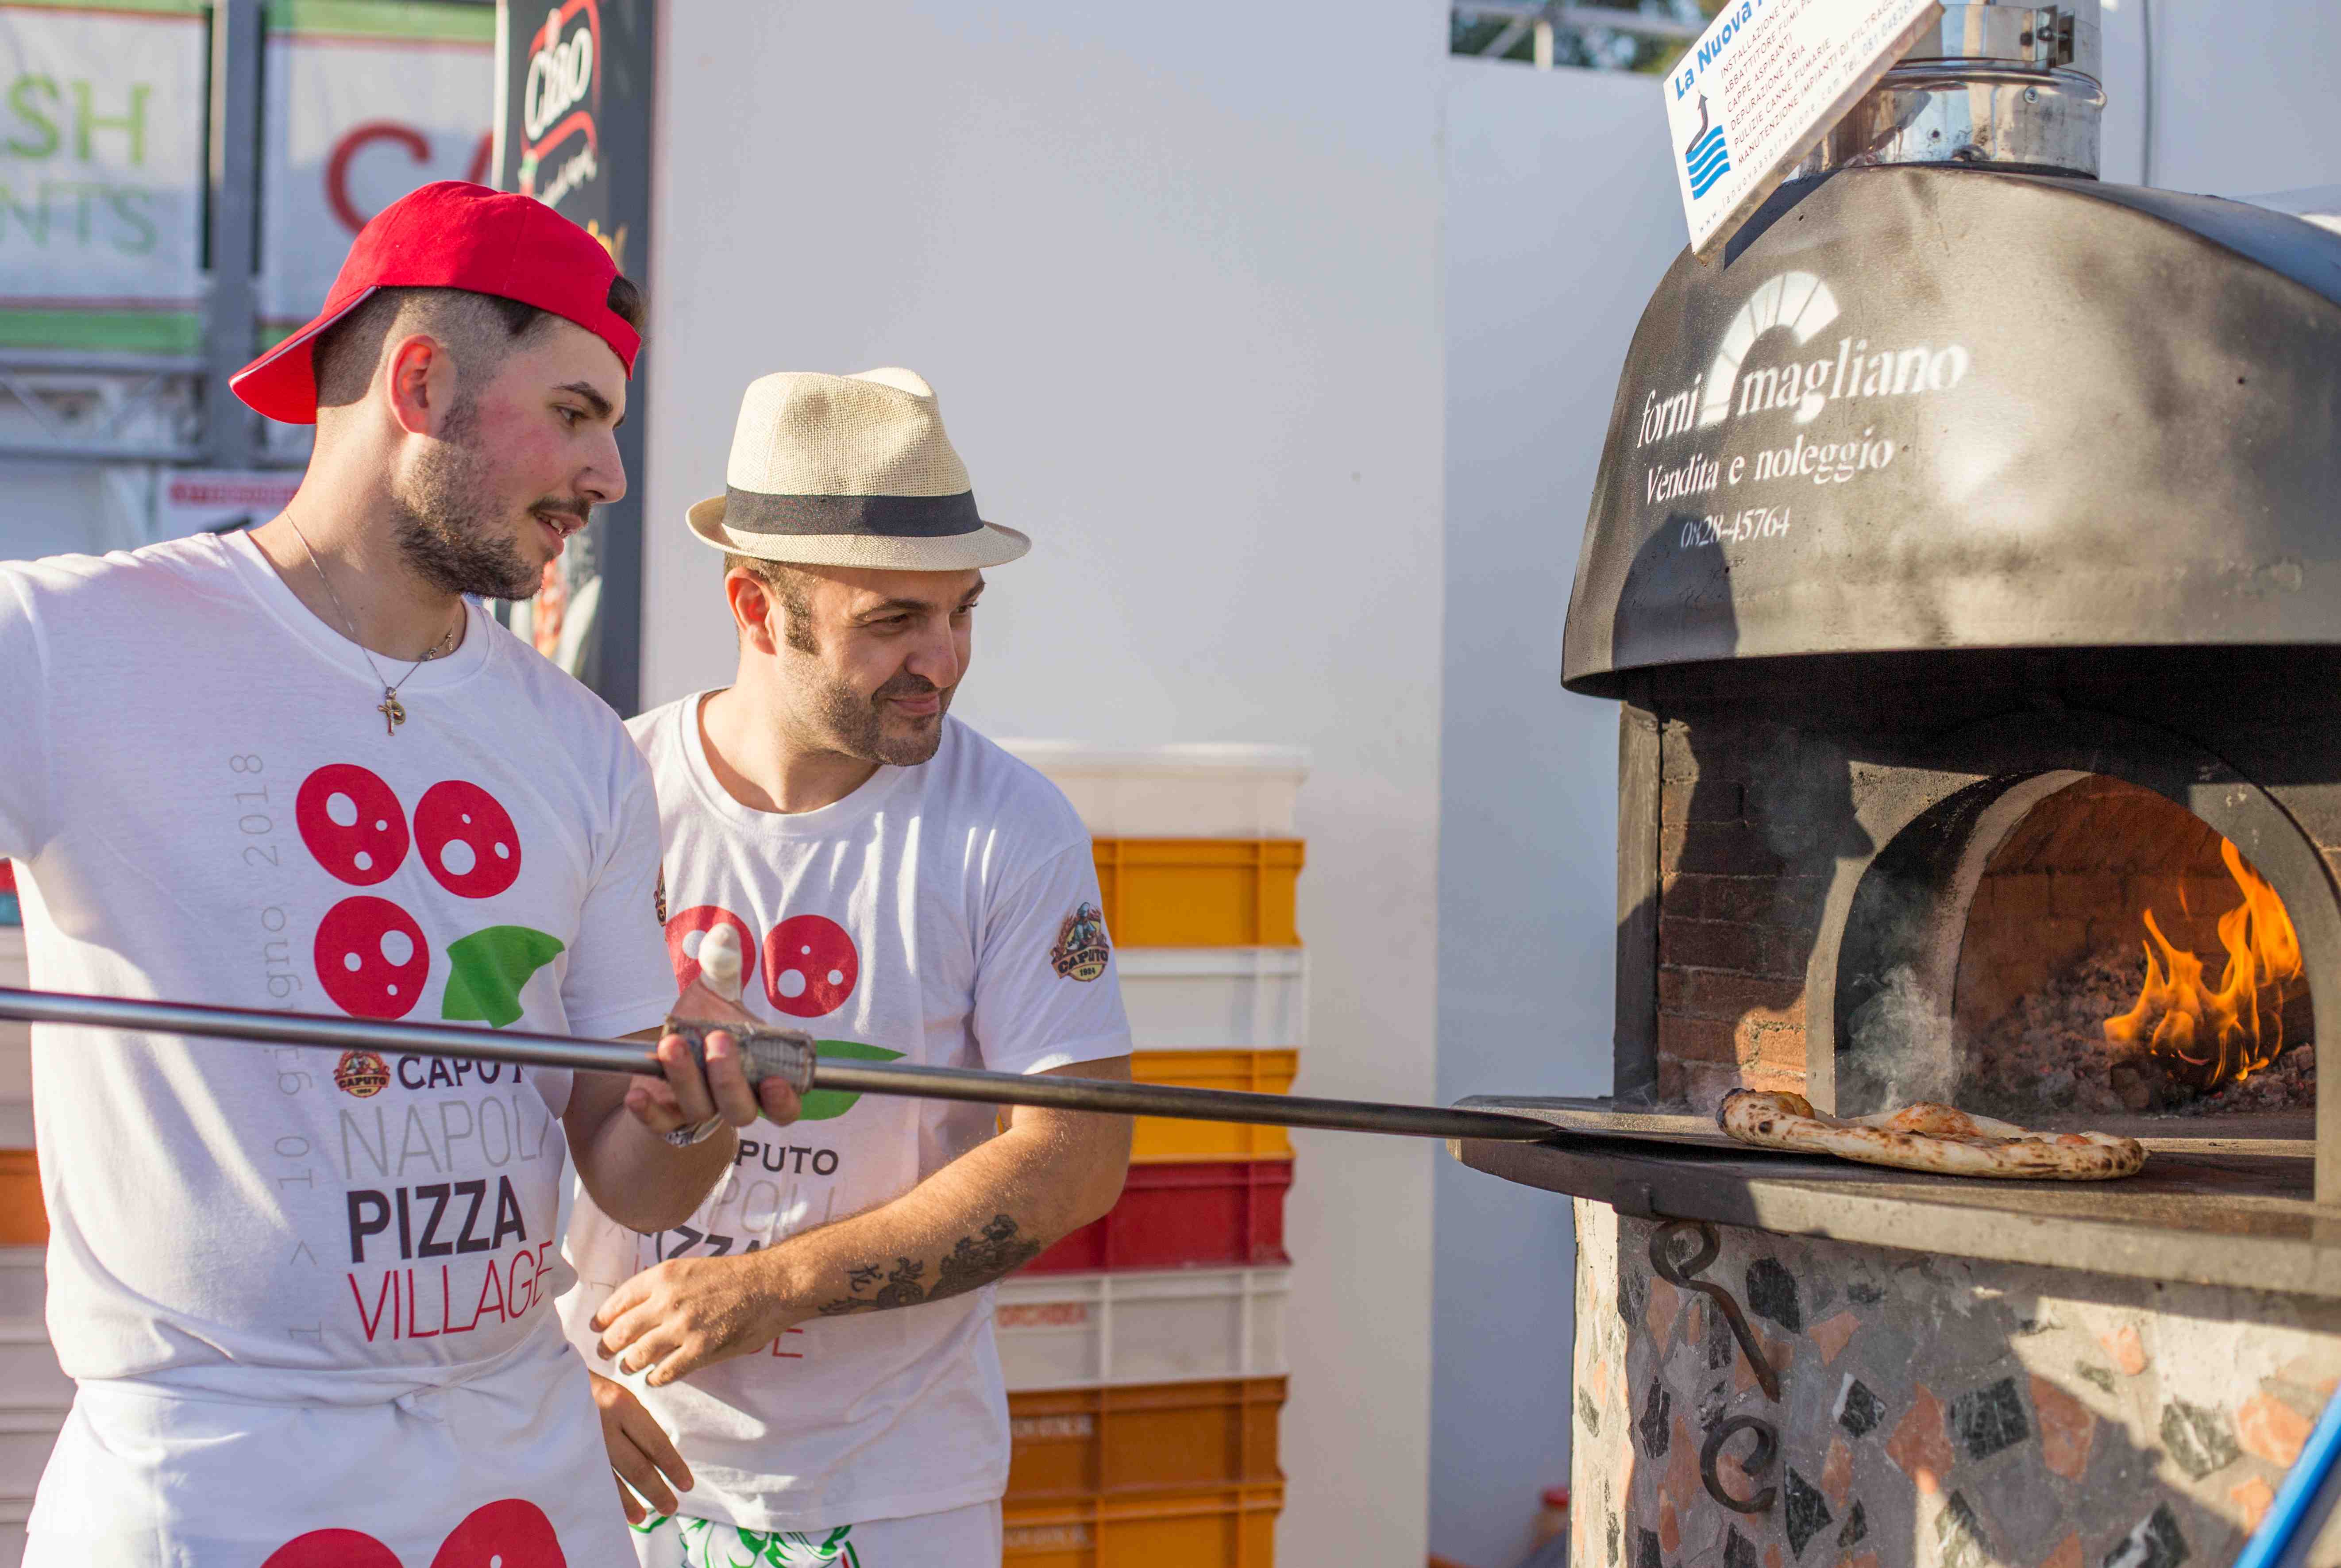 Napoli Pizza Village 2019: sarà il food festival dei record